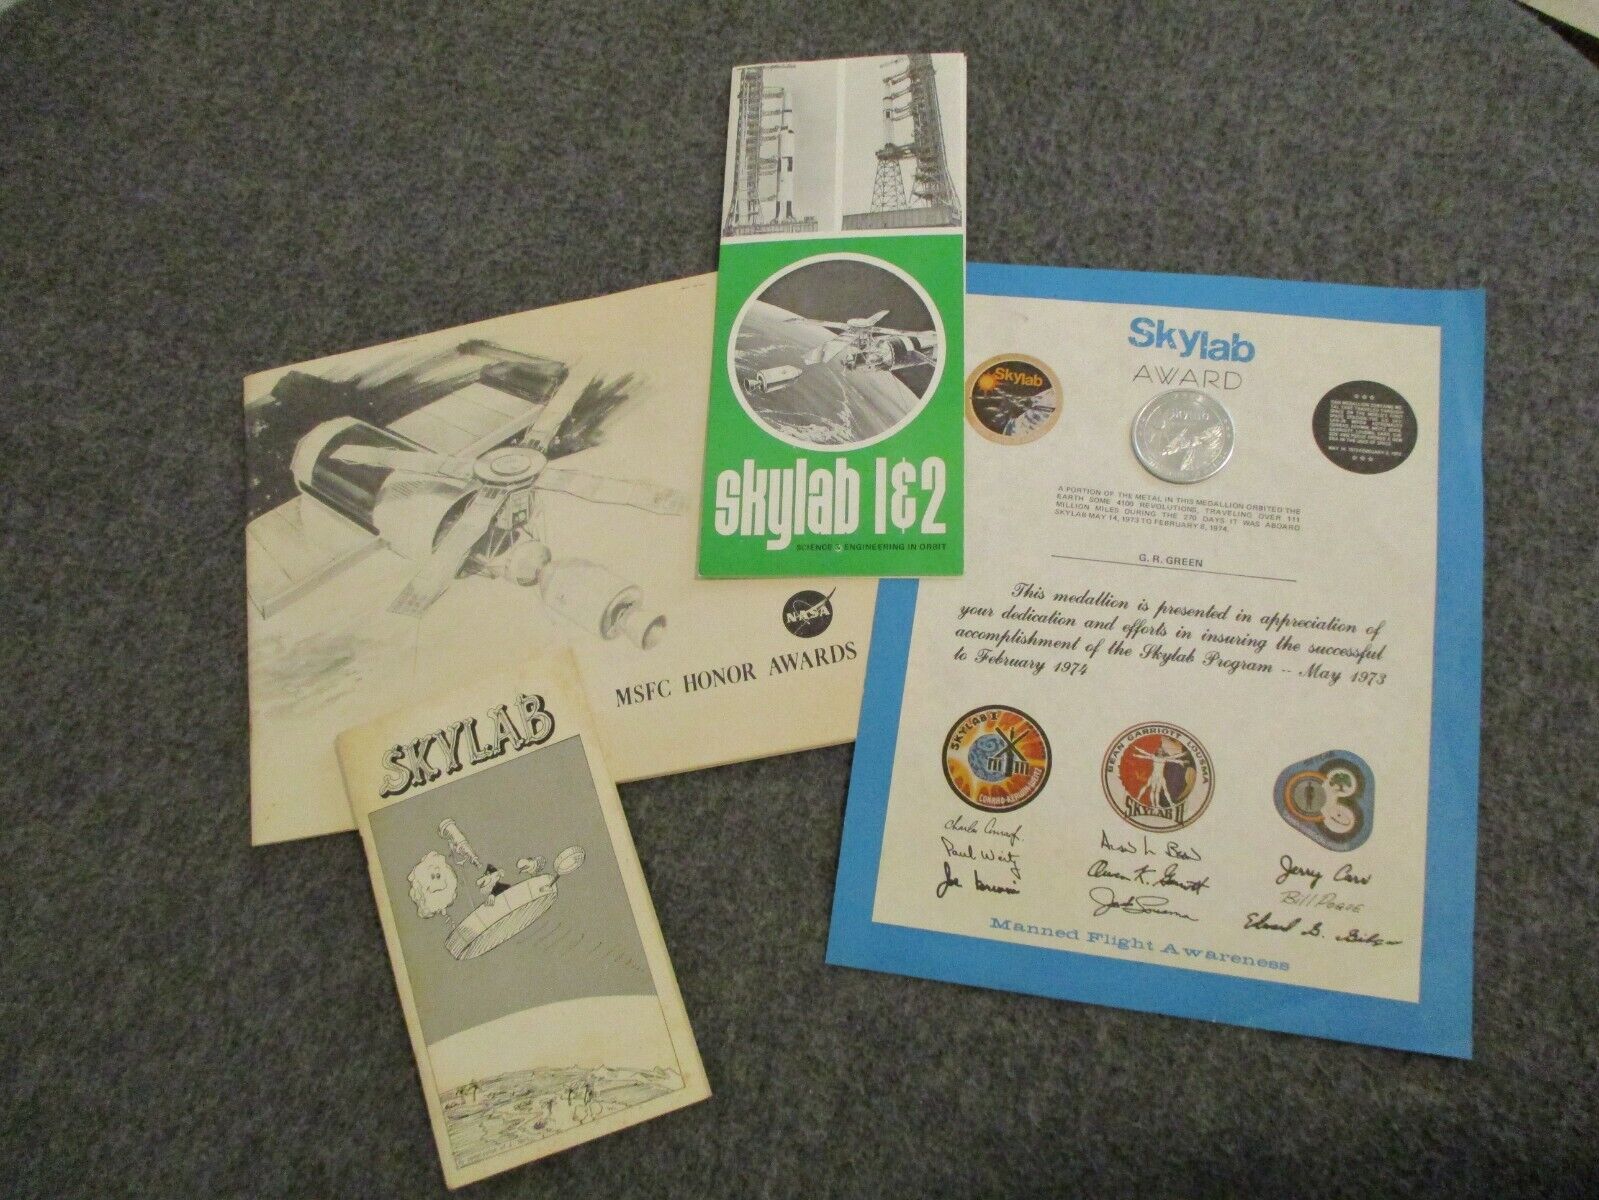 NASA MCDONNELL DOUGLAS APOLLO/SKYLAB 1&2 FLOWN COIN,AWARDS,WIZARD of Id BOOK ++